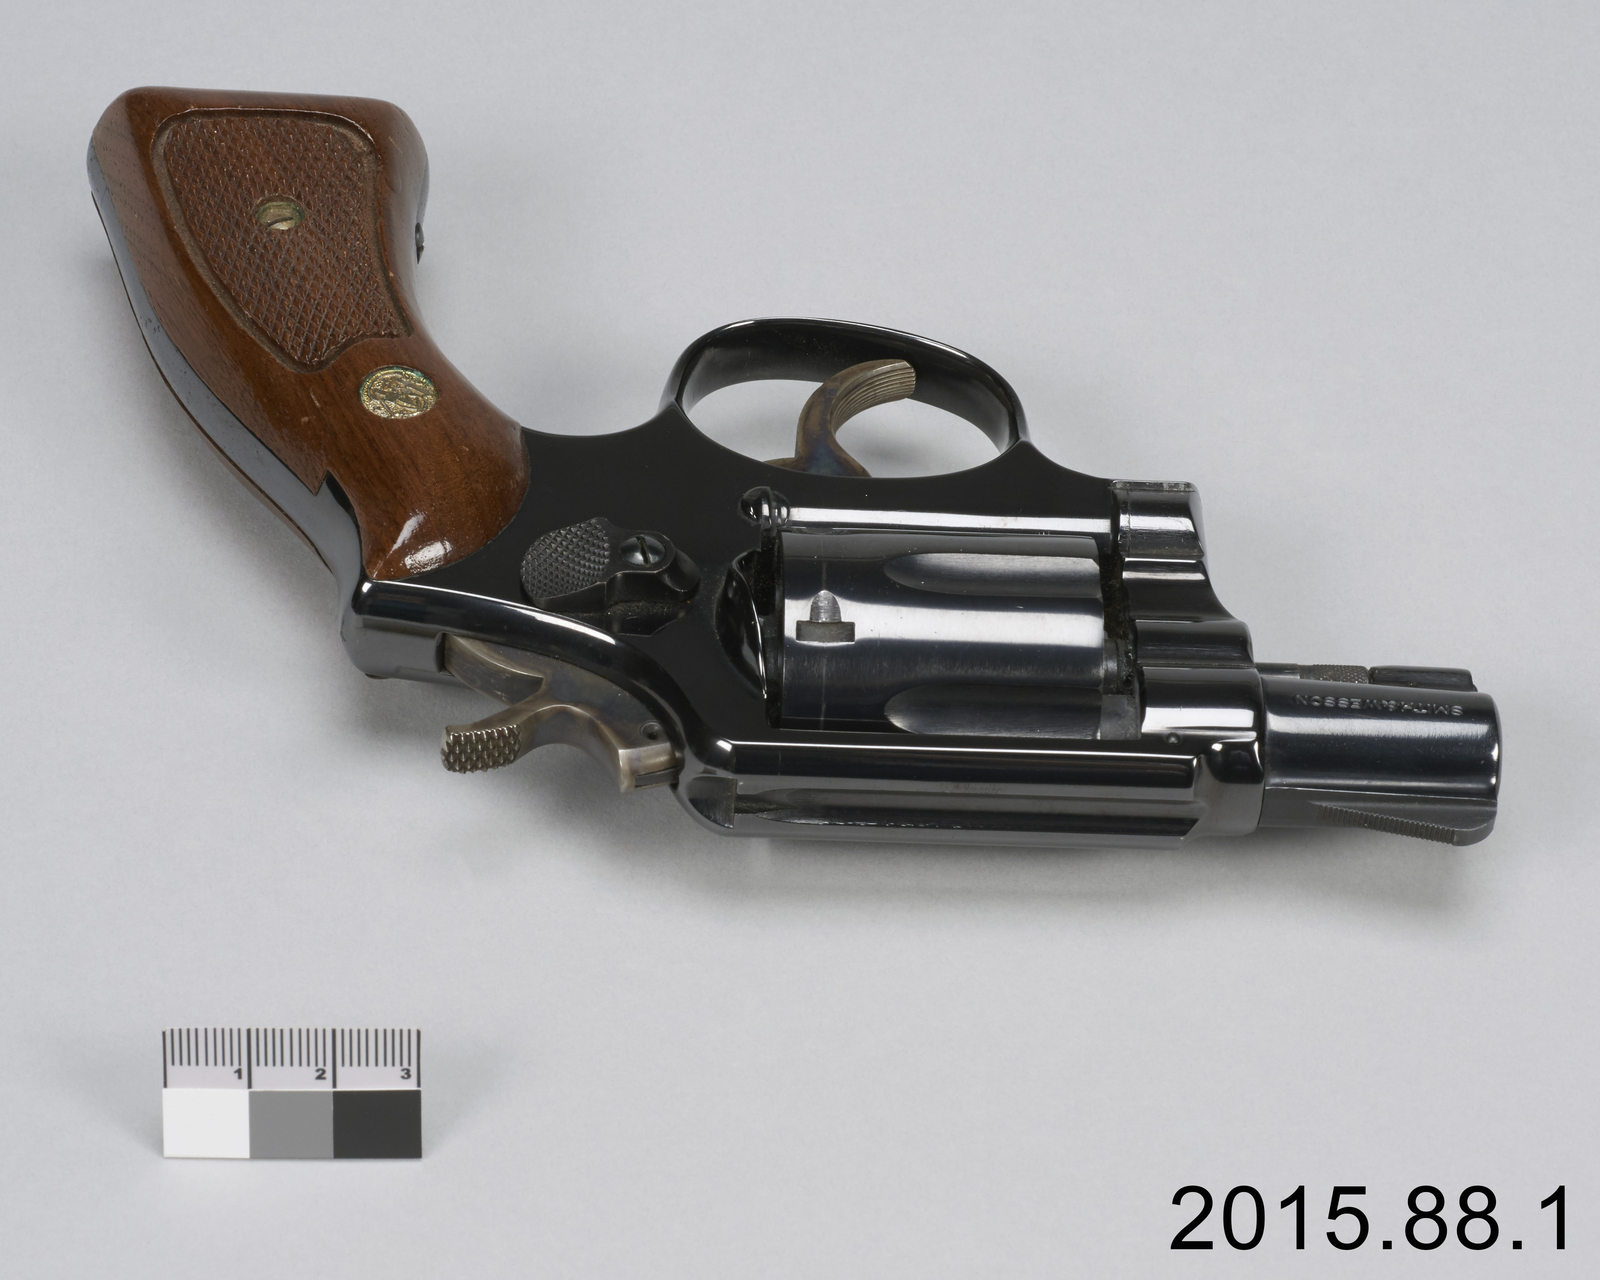 Petit pistolet avec une poignée en bois.//Small pistol with a wooden handle.